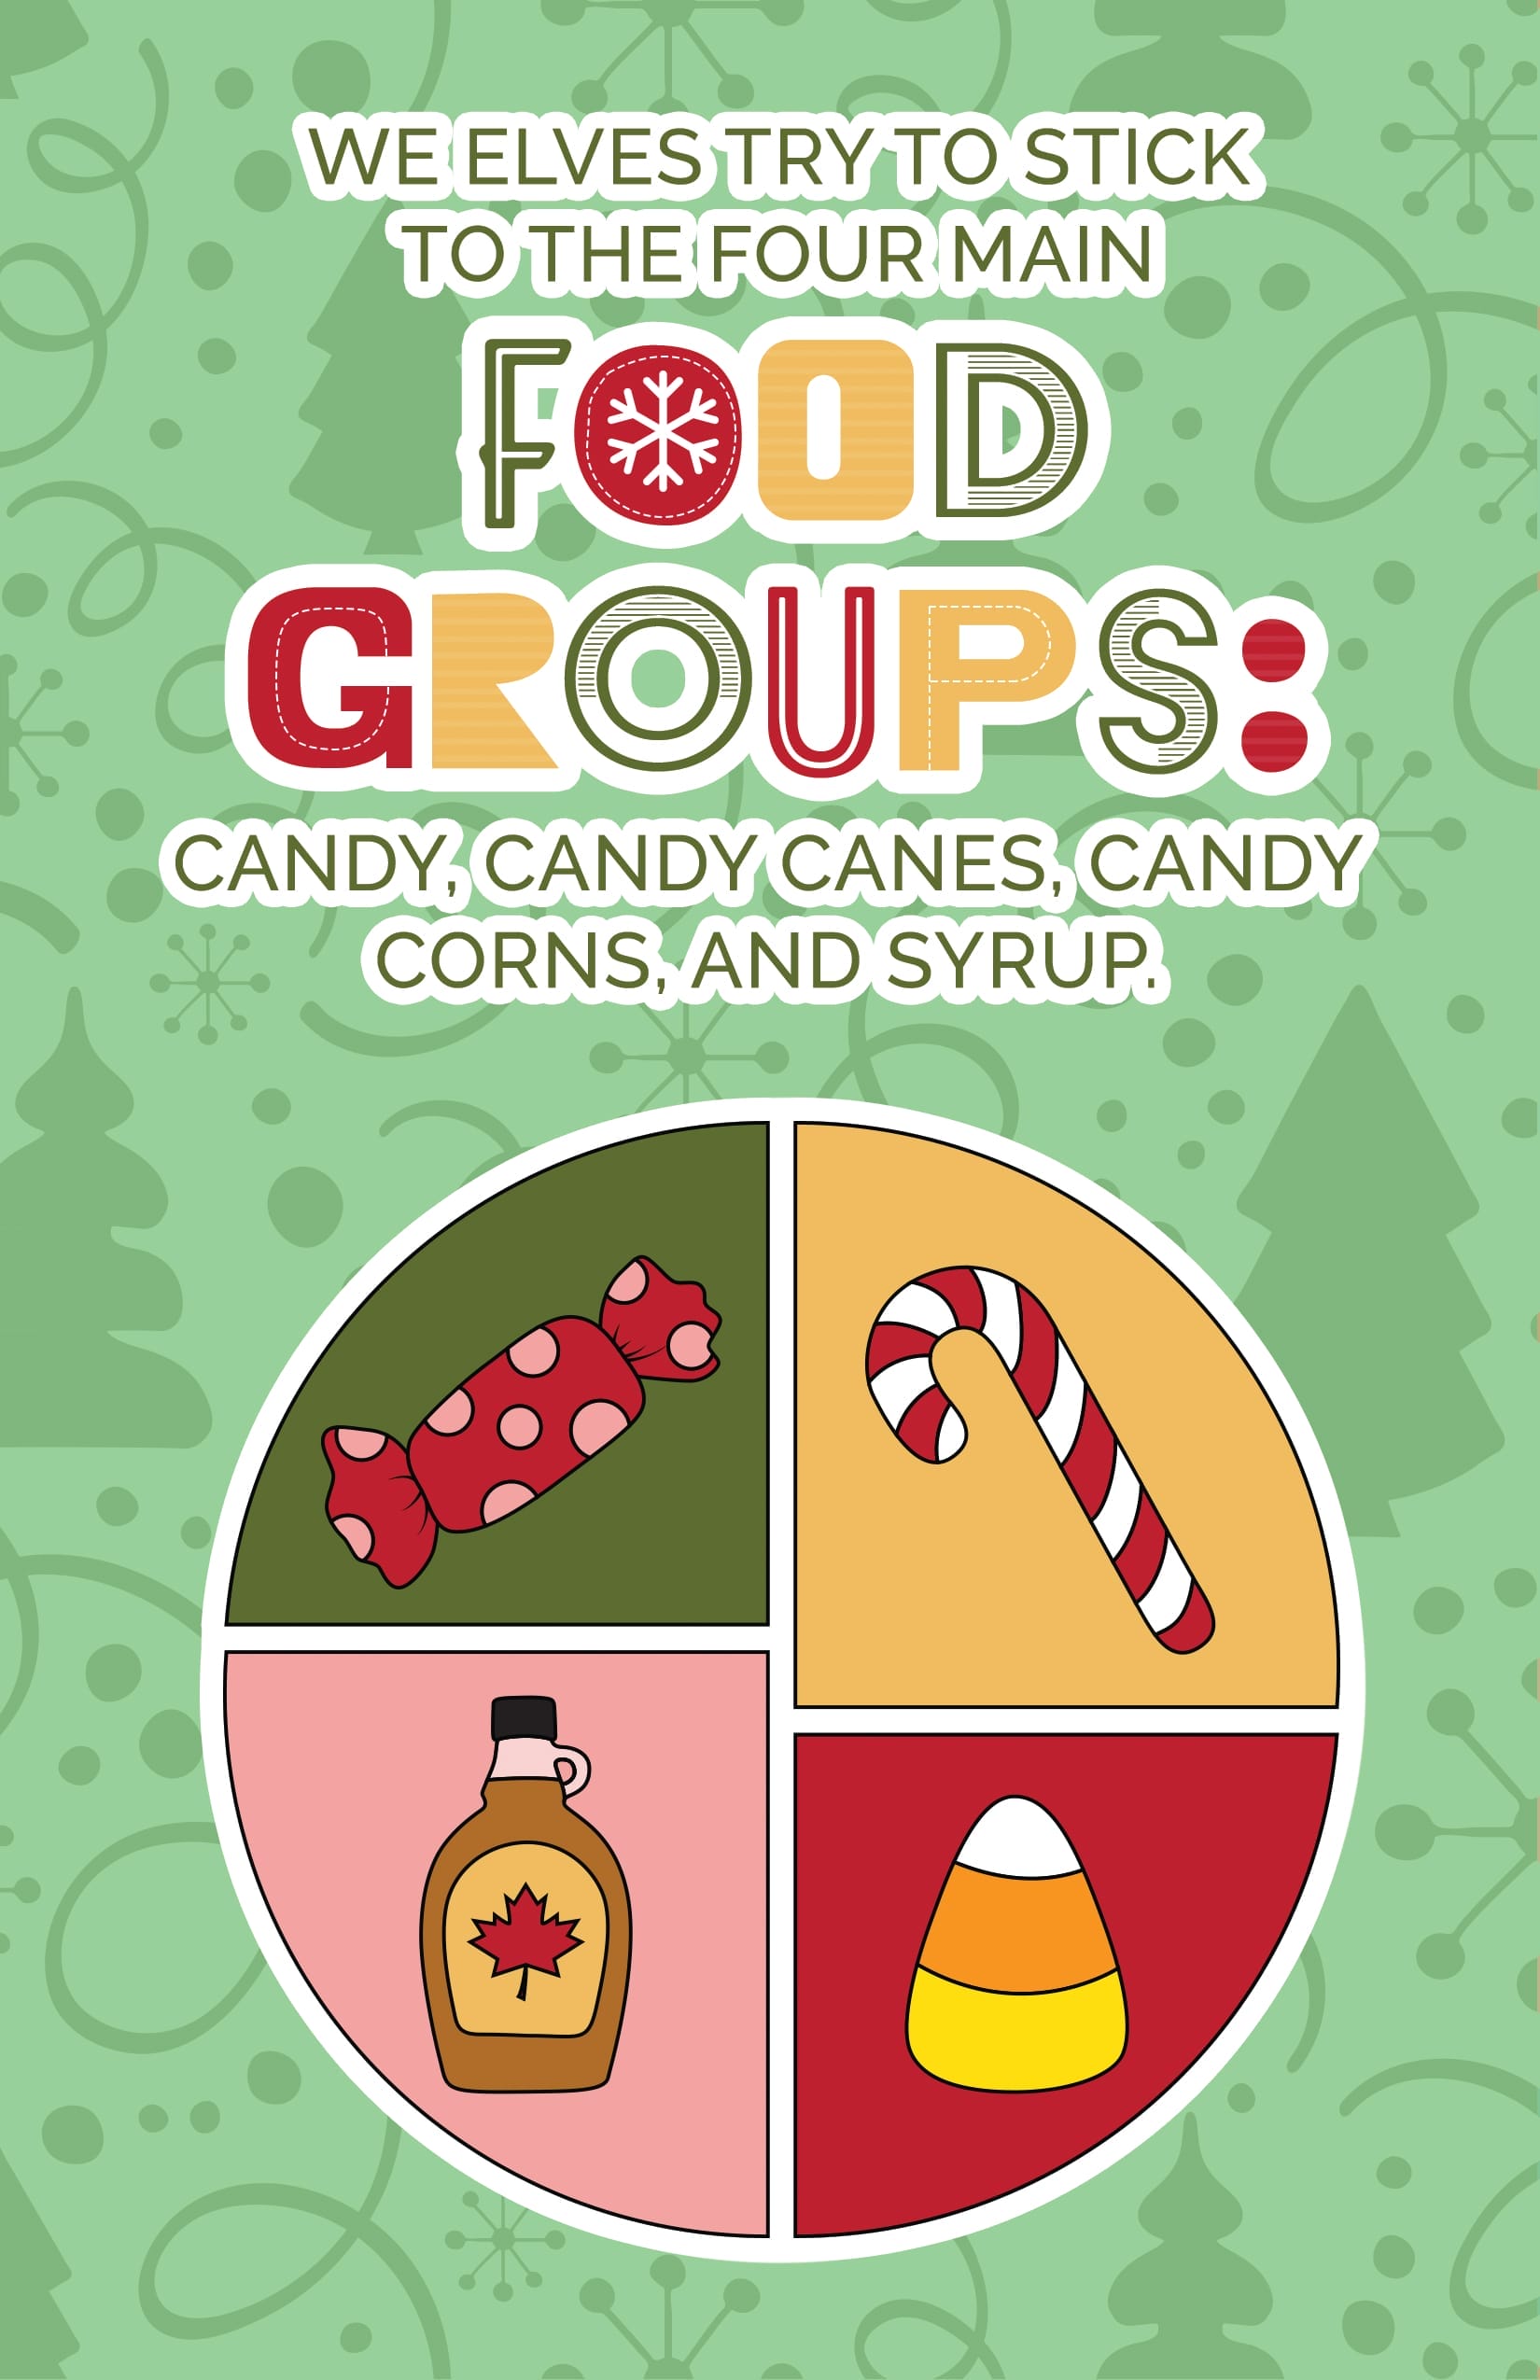 Elf food groups ecard